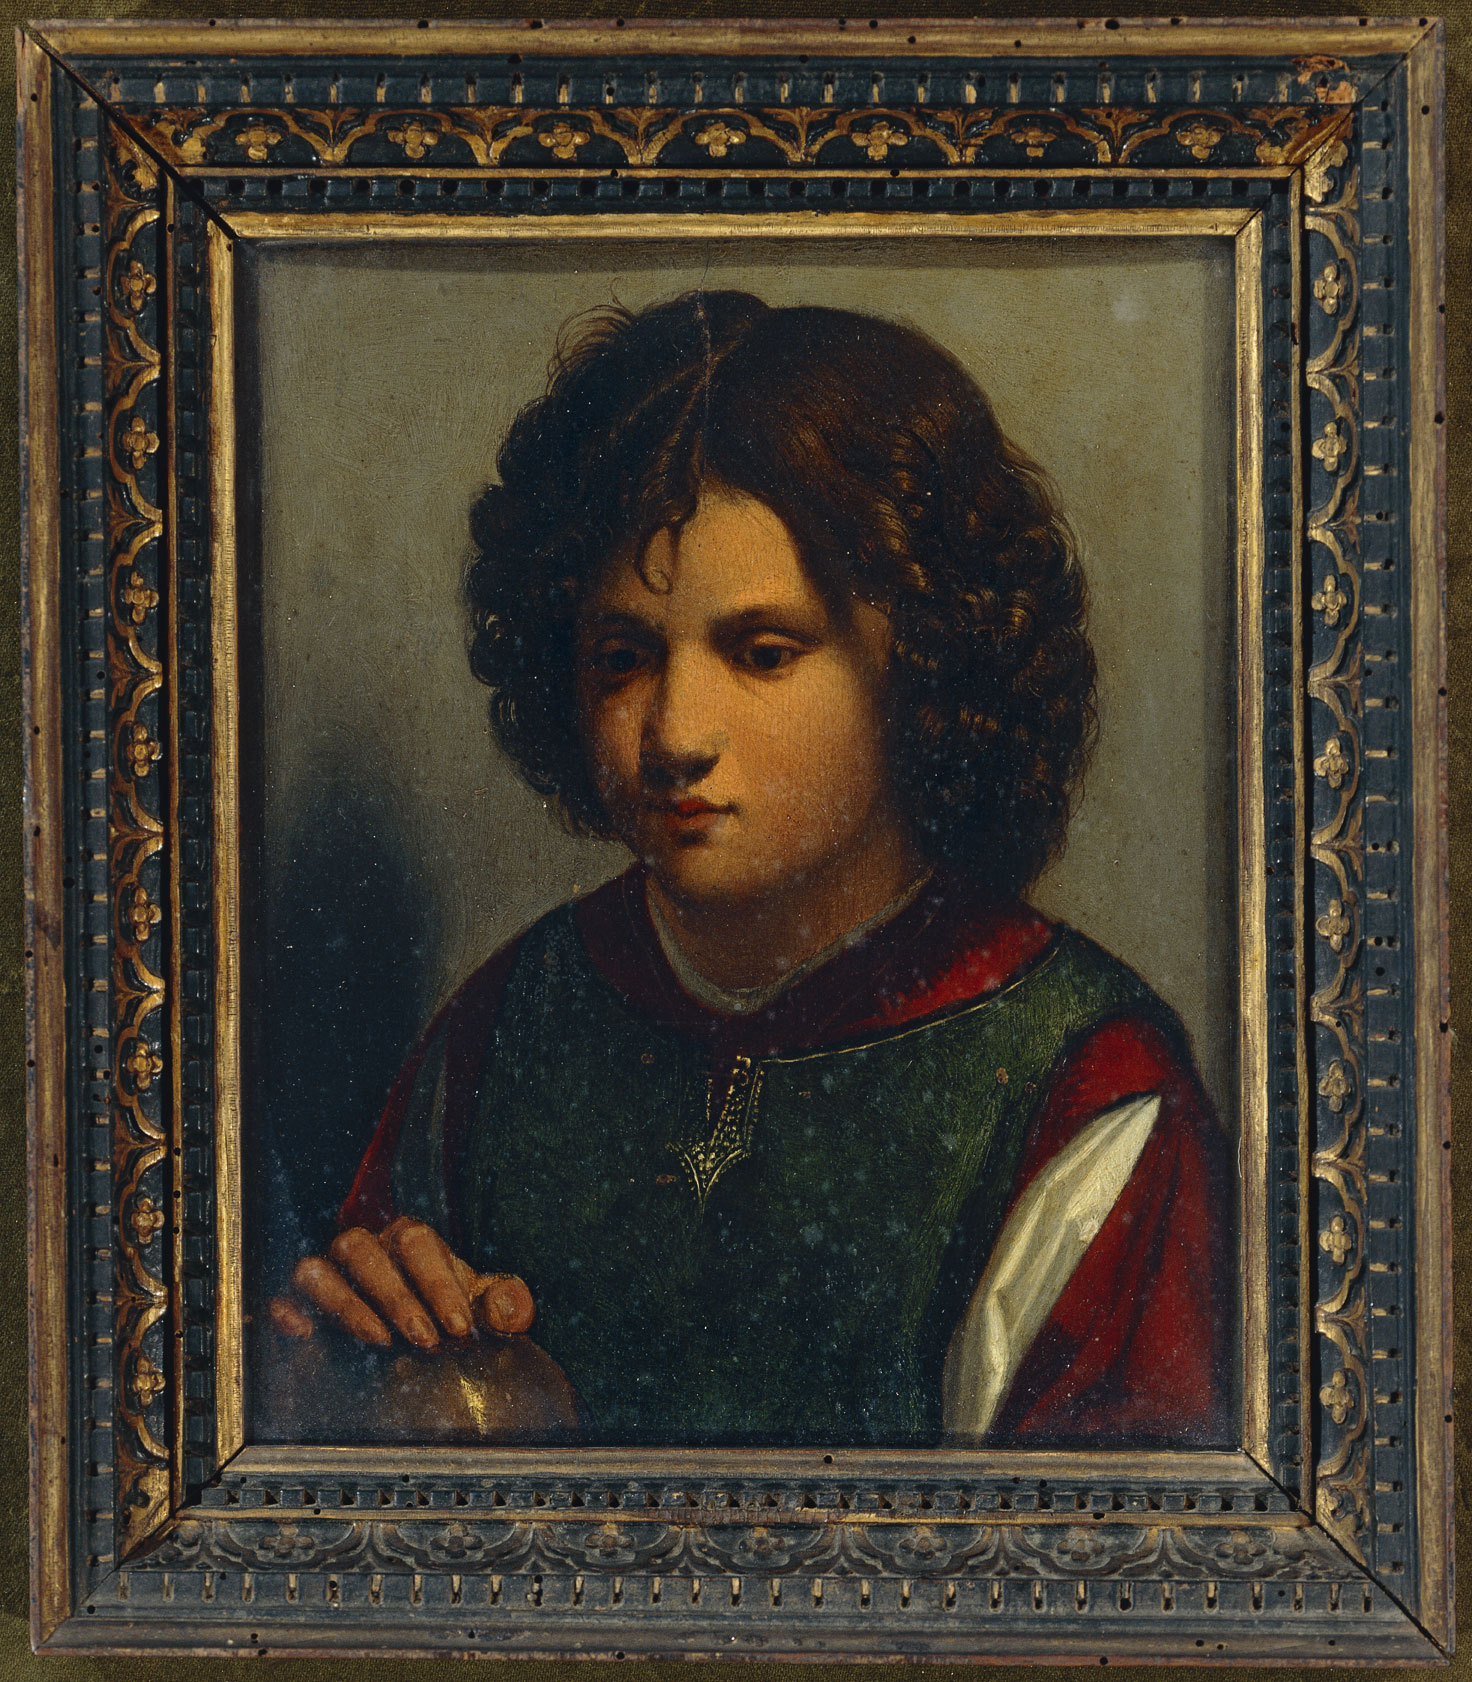 Ritratto di giovane, copia da Giorgione, olio su tavola, 1520 circa Le scarse testimonianze sulla sua vita di Giorgione e la mancanza di lavori autografi rendono molto difficile l'attribuzione delle sue opere, ancora oggi fonte di discussione. Soltanto una trentina di dipinti gli sono attribuiti con assoluta certezza; questa risulta una copia.